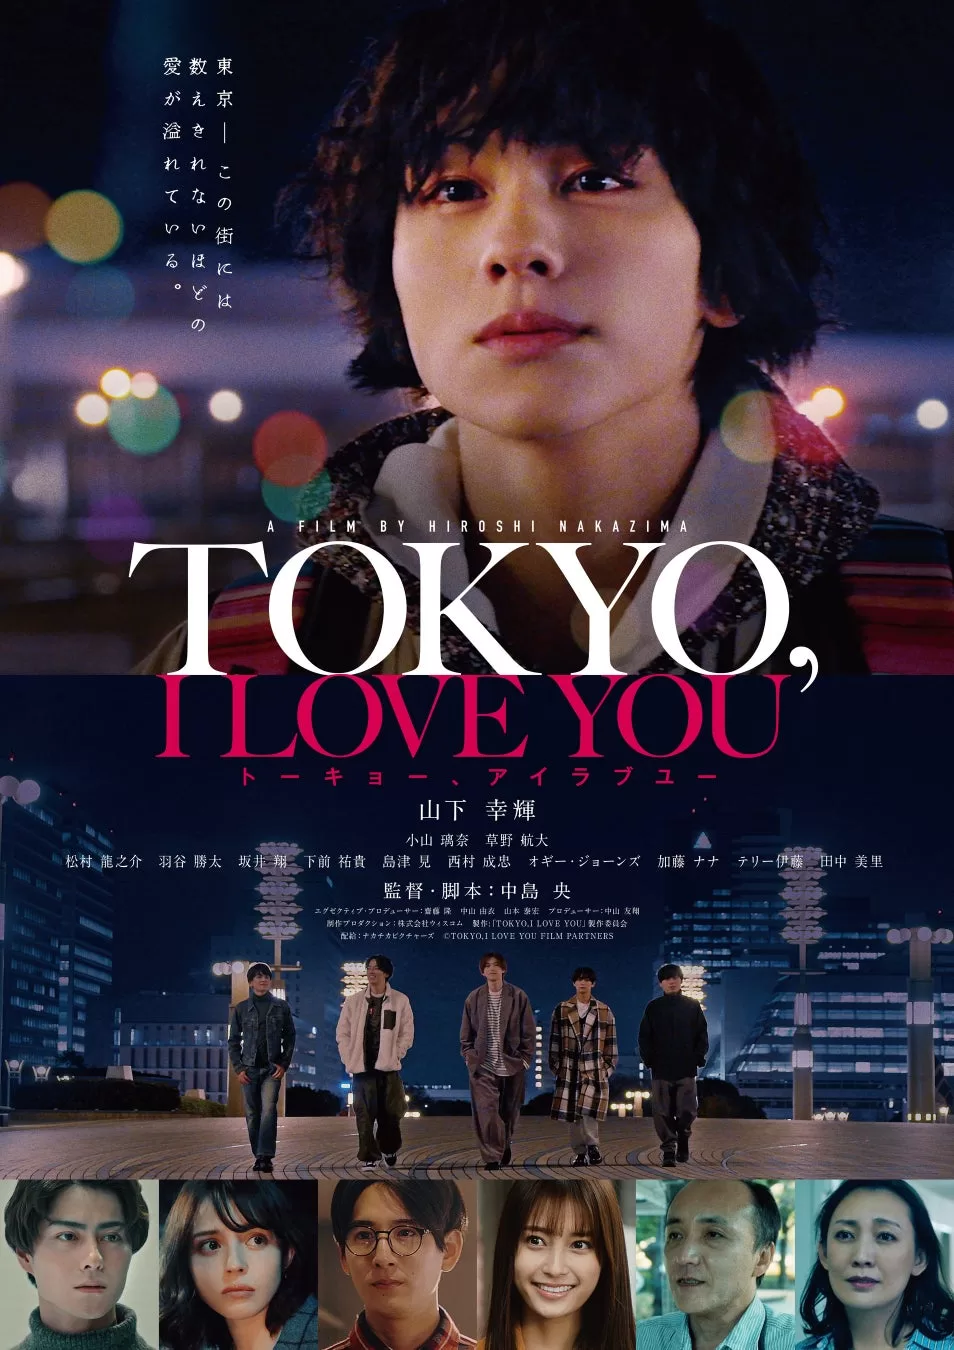 11月10日劇場公開に向けてポスタービジュアル解禁!山下幸輝 初主演映画「TOKYO,I LOVE YOU 」